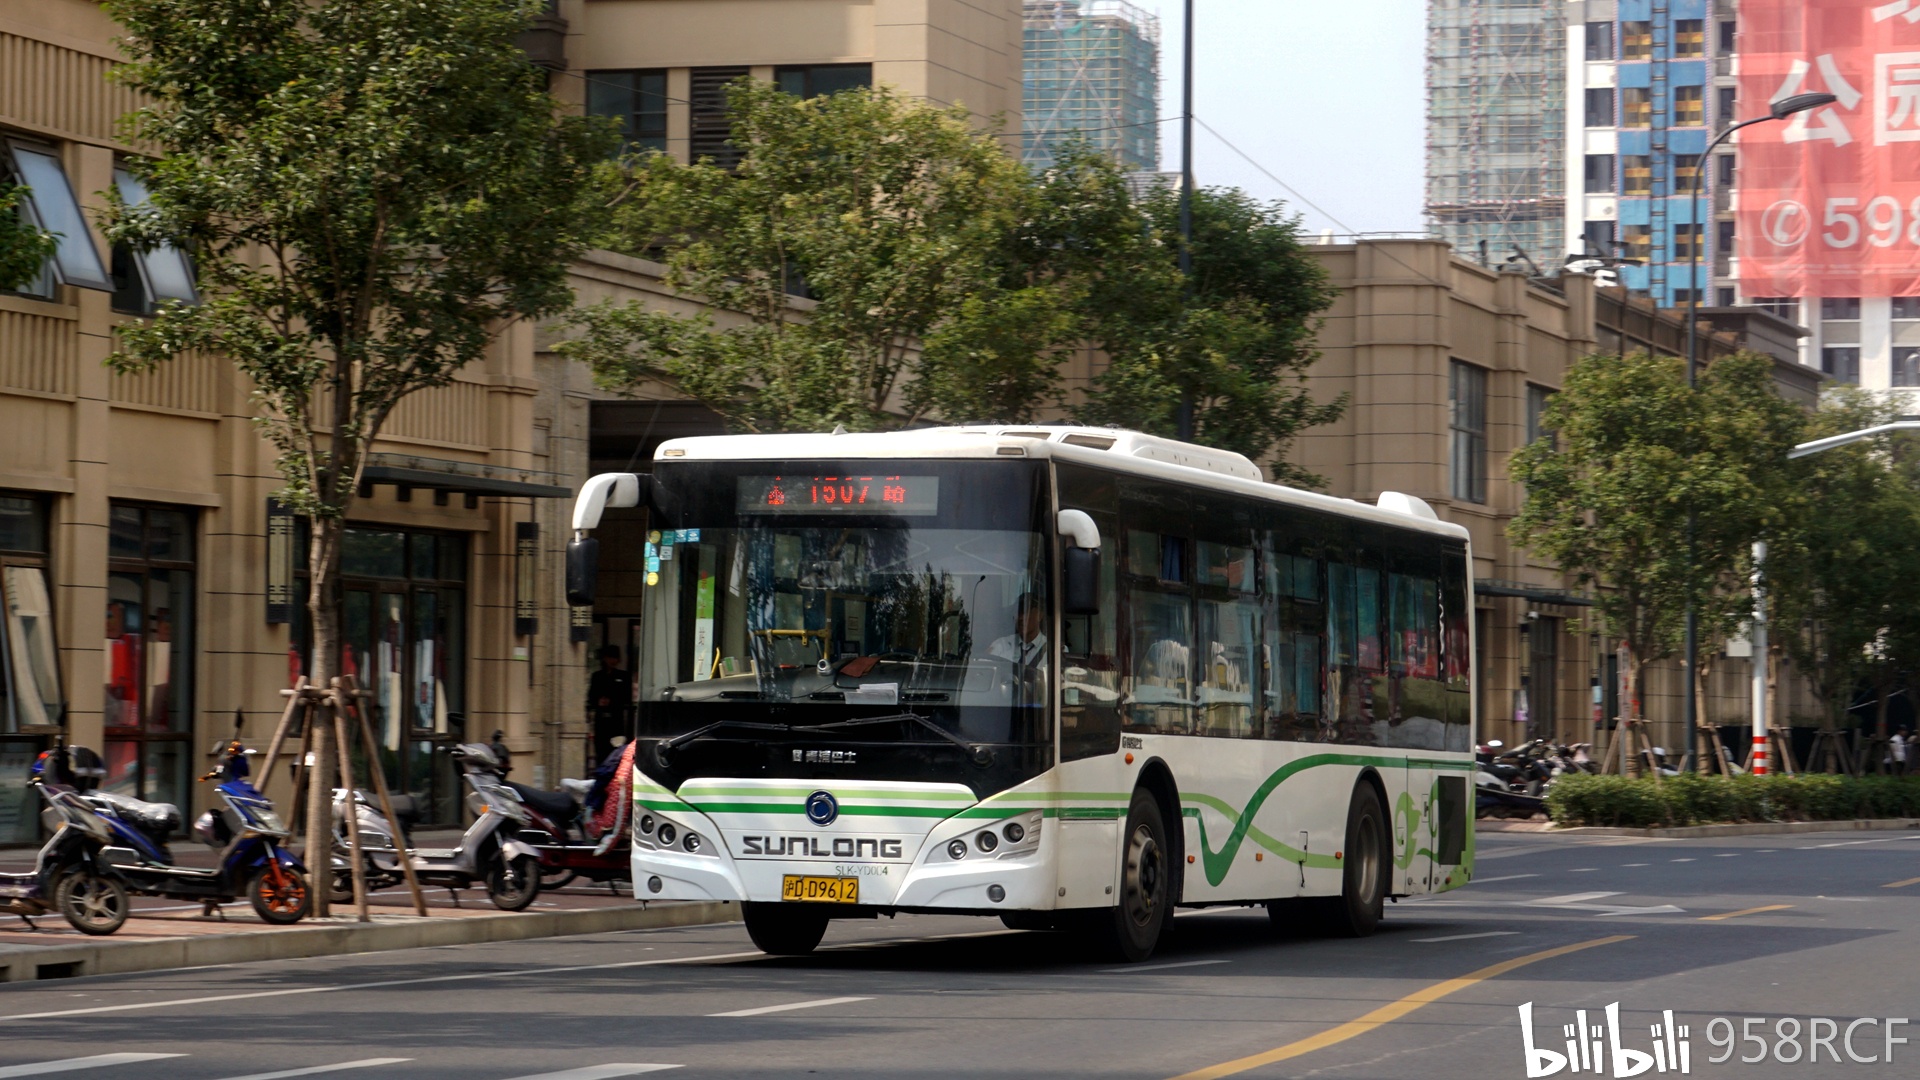 上海公交现役车型图集(截止2020年9月)—申龙篇 - 哔哩哔哩